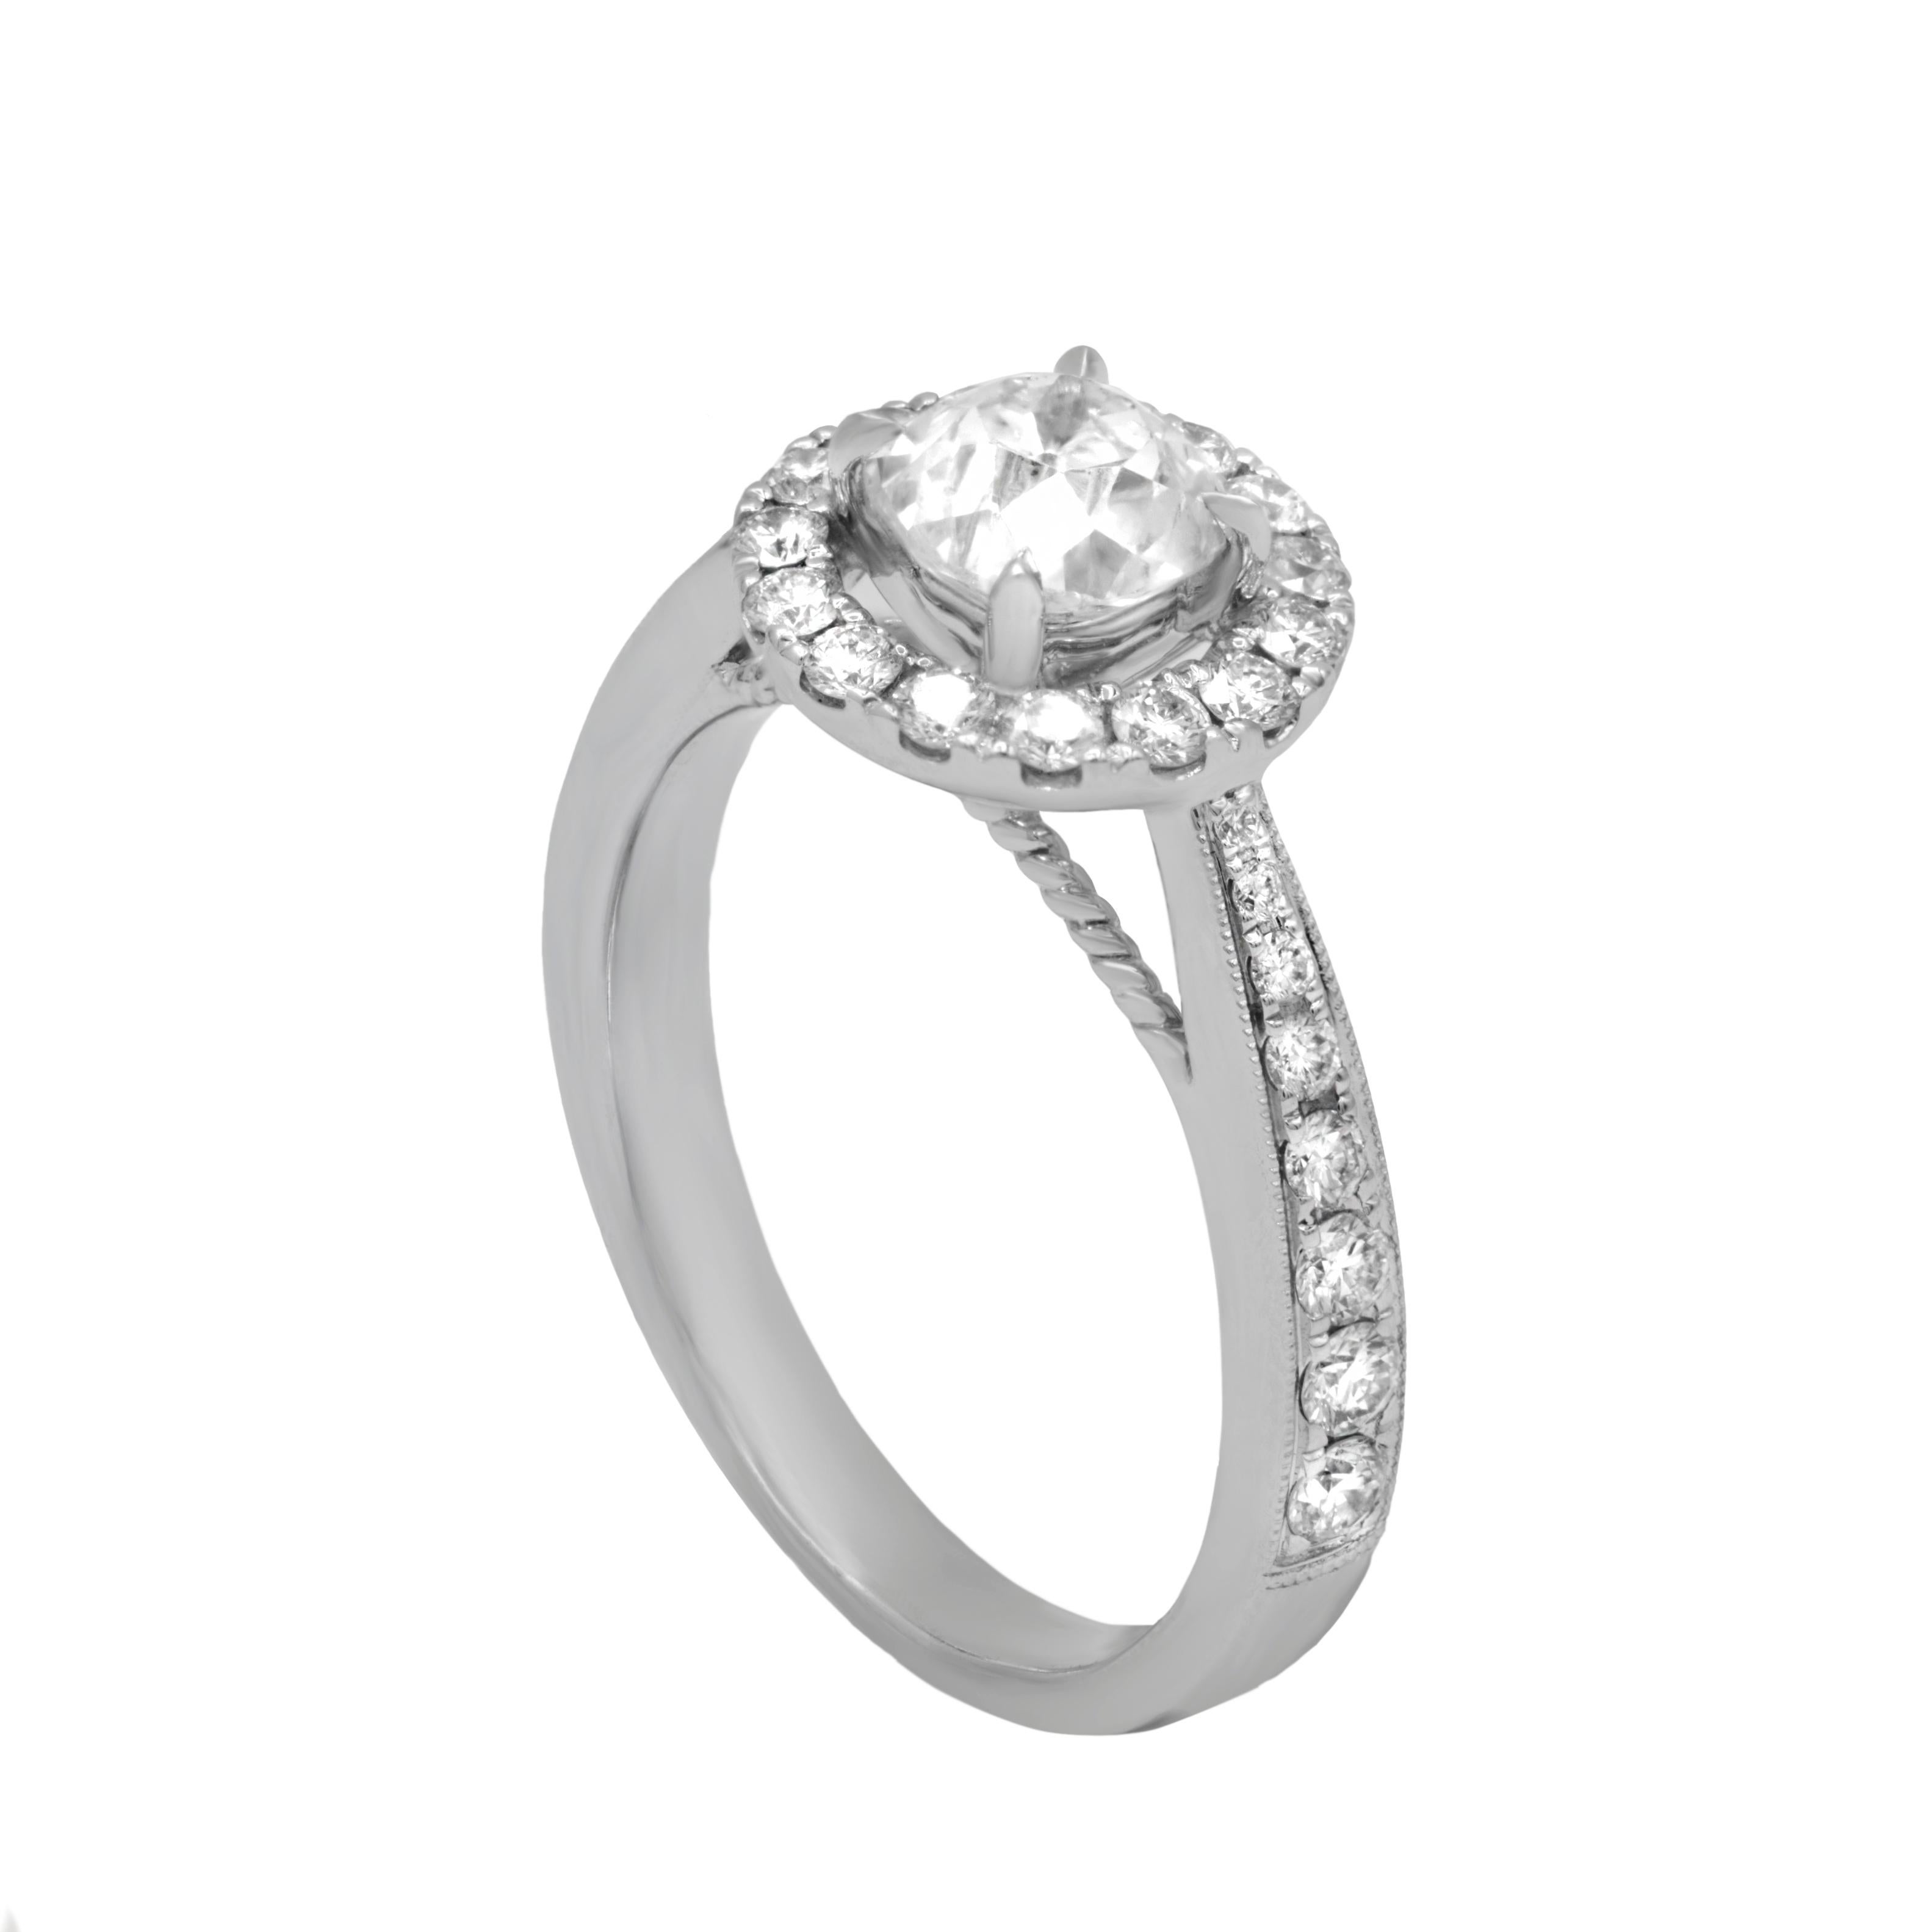 Diana m. Fine jewelry 18k 1.55 ct. Tw. Diamond ring
